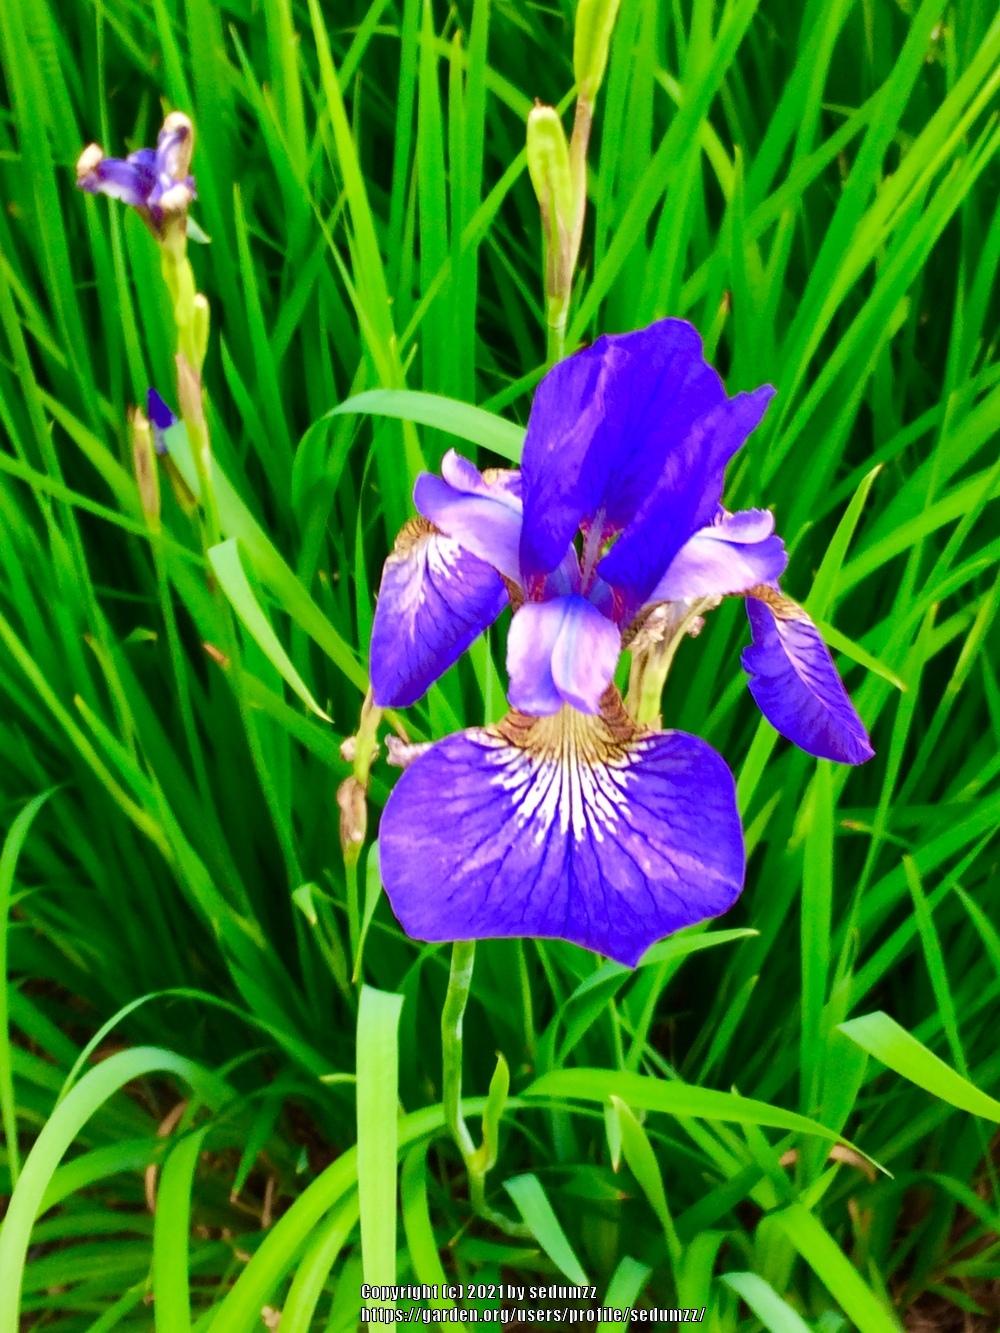 Photo of Irises (Iris) uploaded by sedumzz